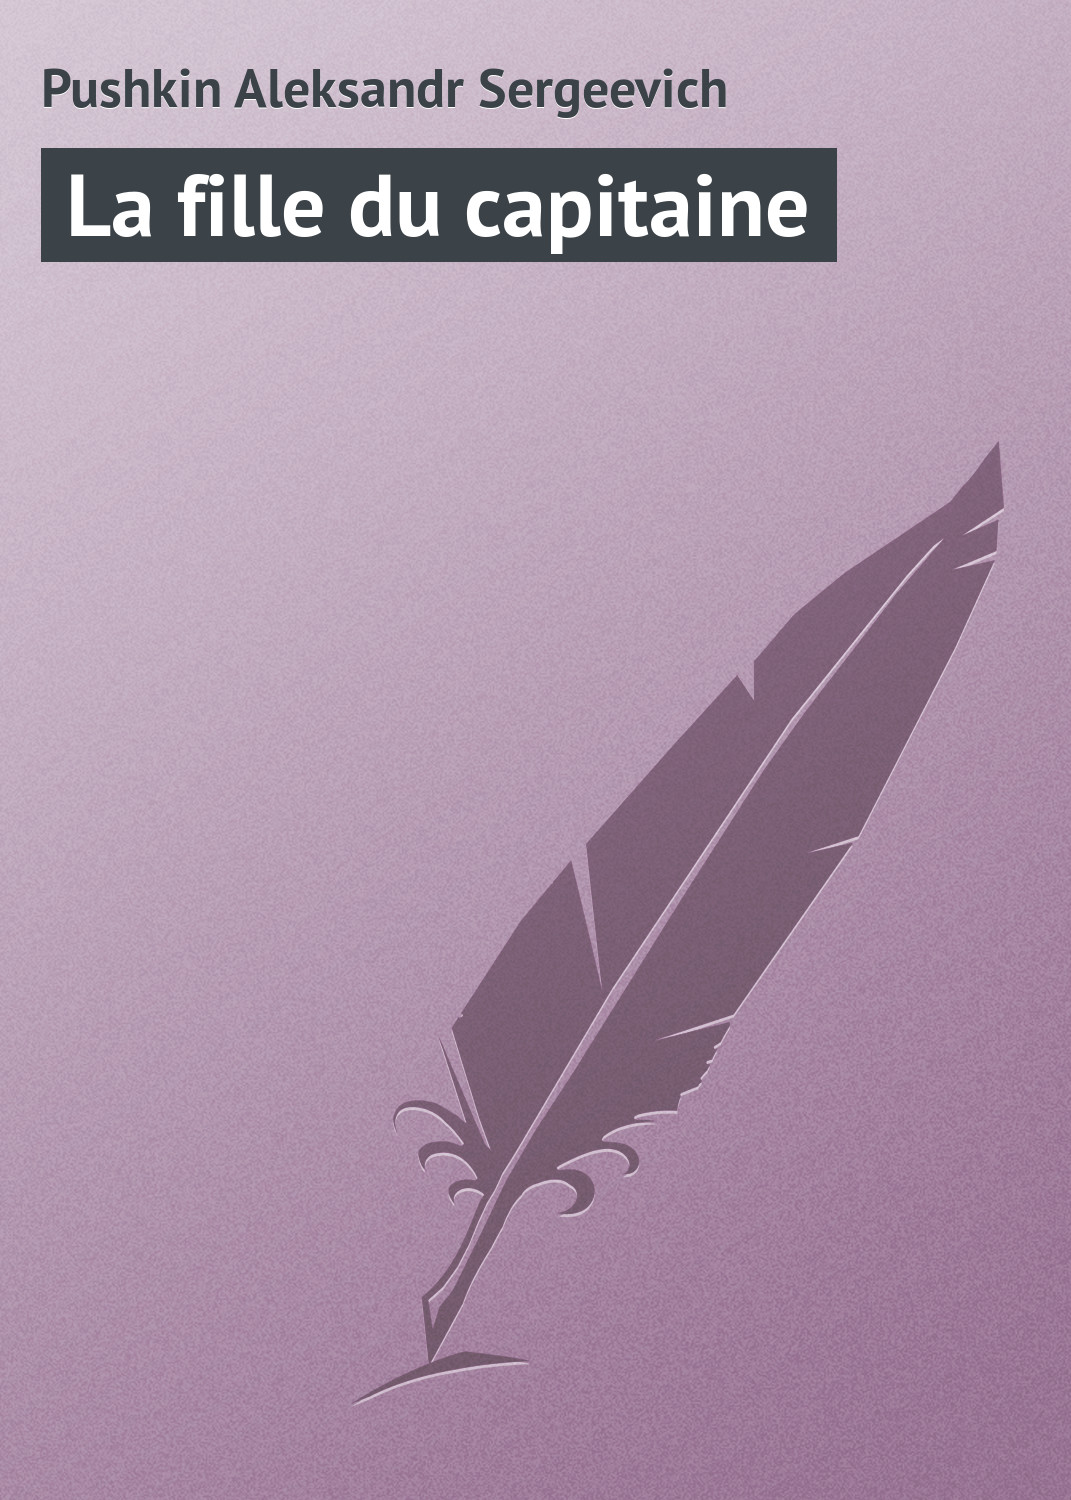 Книга La fille du capitaine из серии , созданная Aleksandr Pushkin, может относится к жанру Русская классика. Стоимость электронной книги La fille du capitaine с идентификатором 23155203 составляет 5.99 руб.